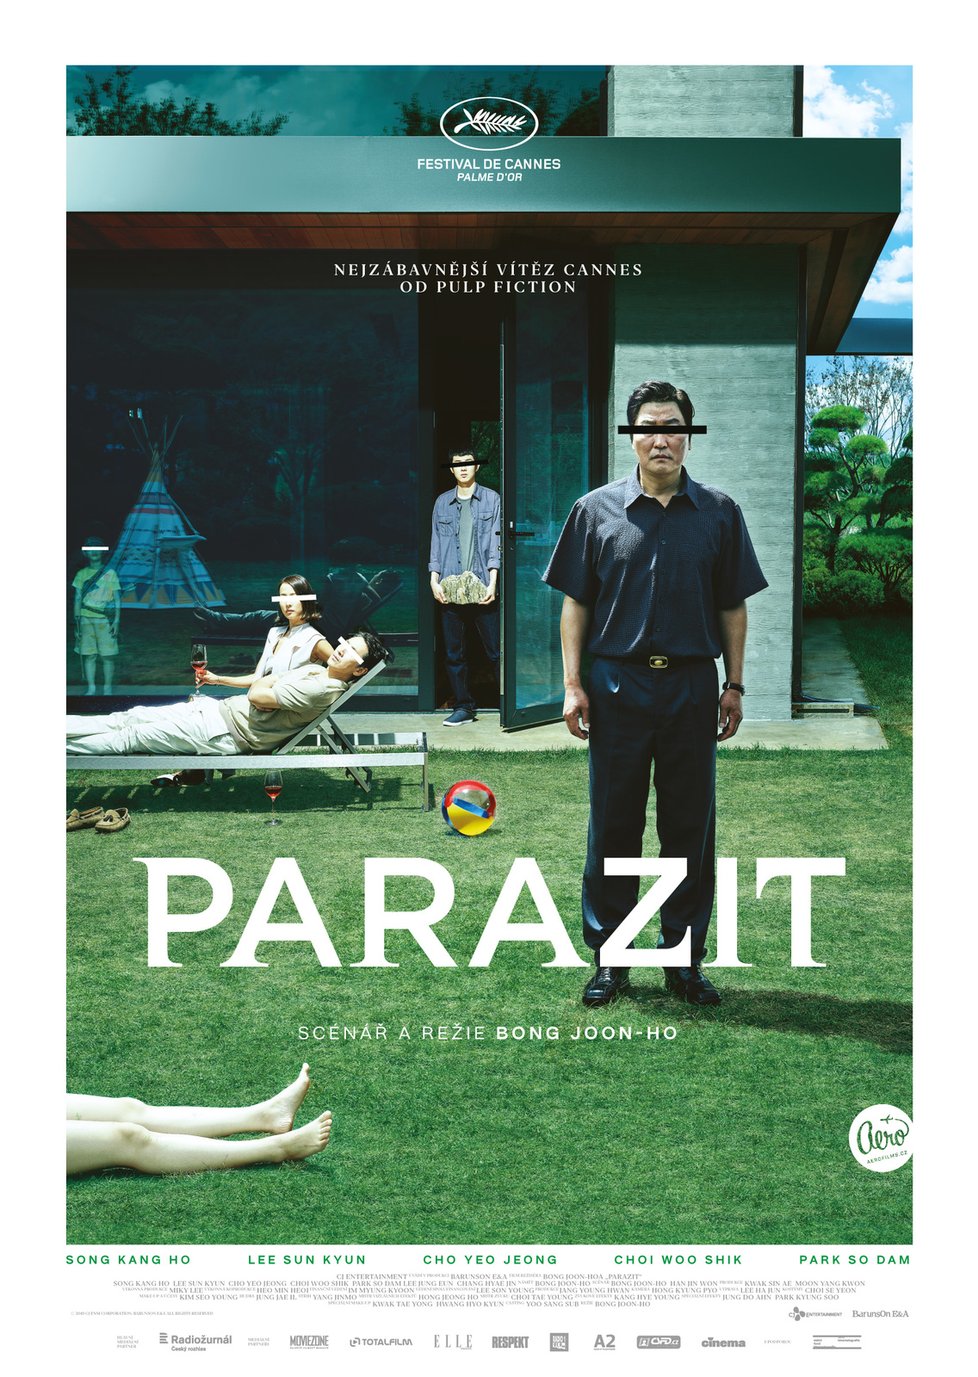 Film Parazit si získal diváky v Cannes i v Karlových Varech